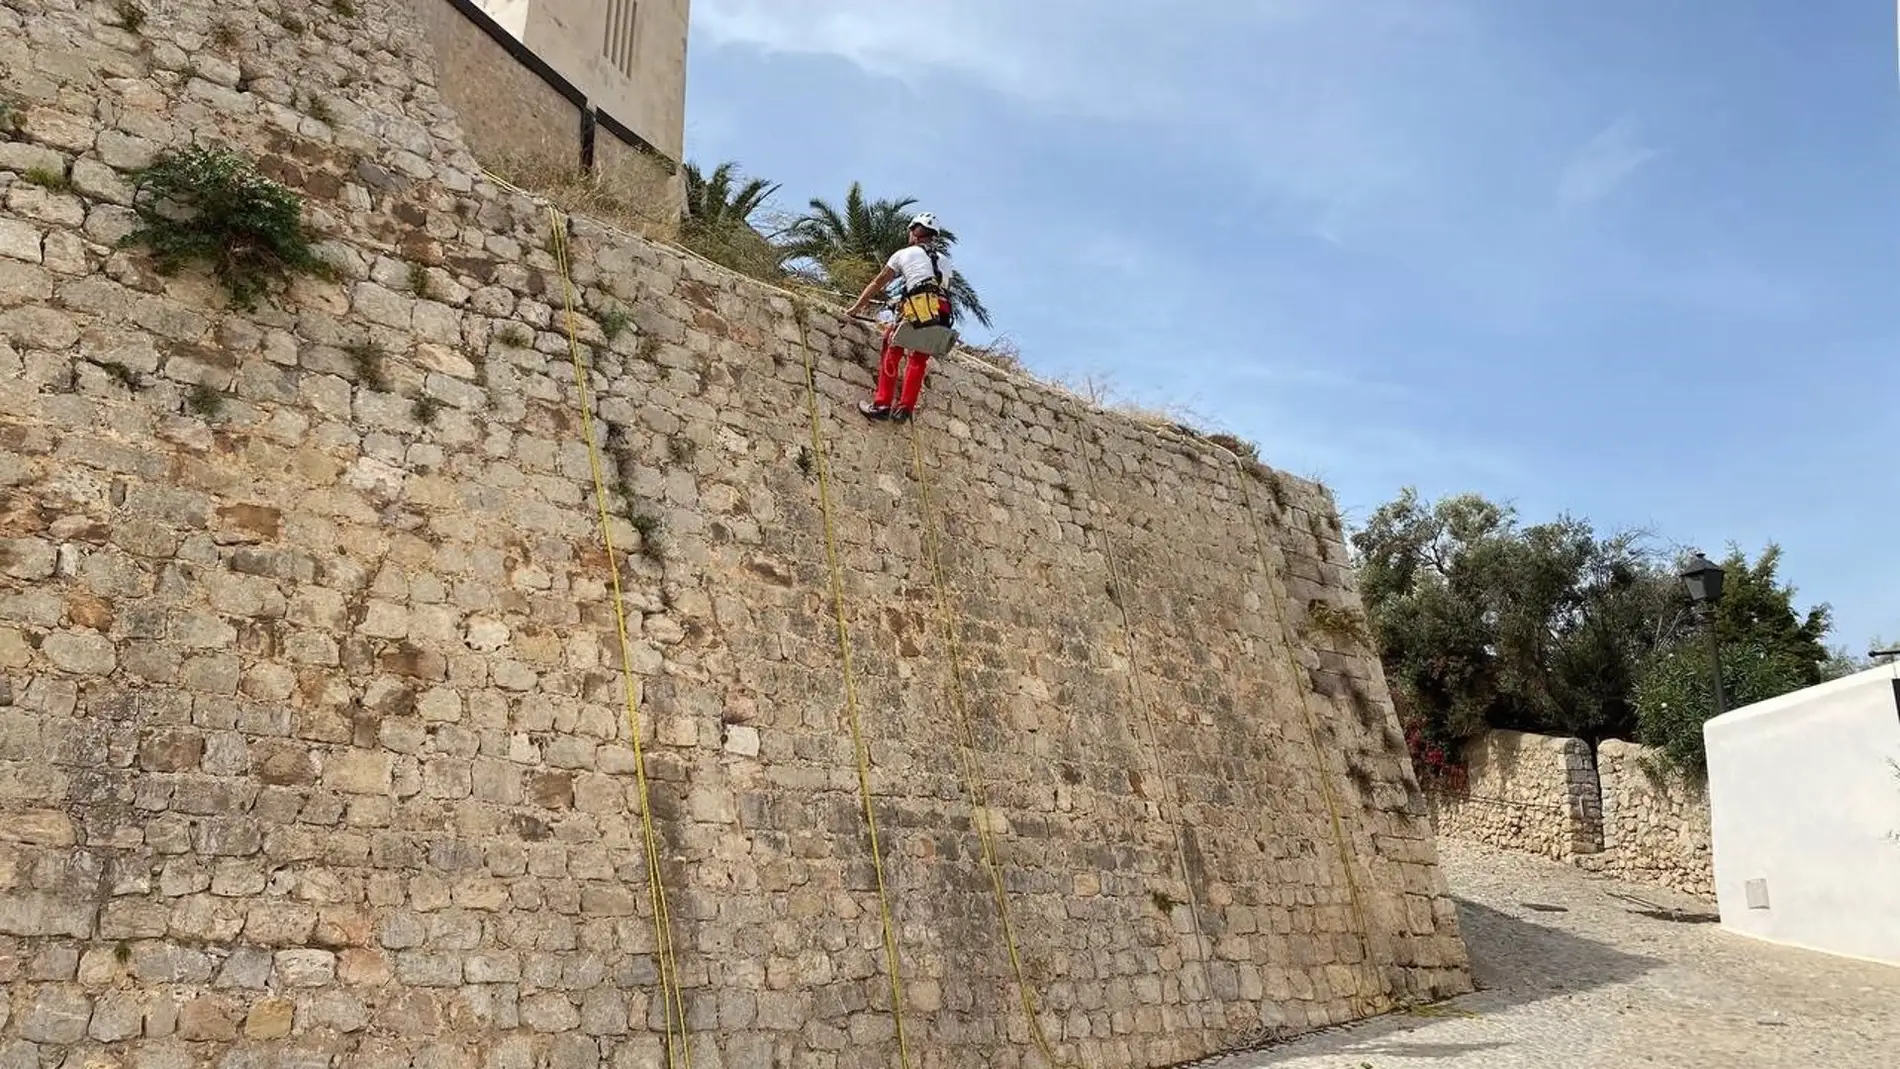 Comienzan los trabajos de eliminación de hierbas en las murallas renacentistas de Ibiza